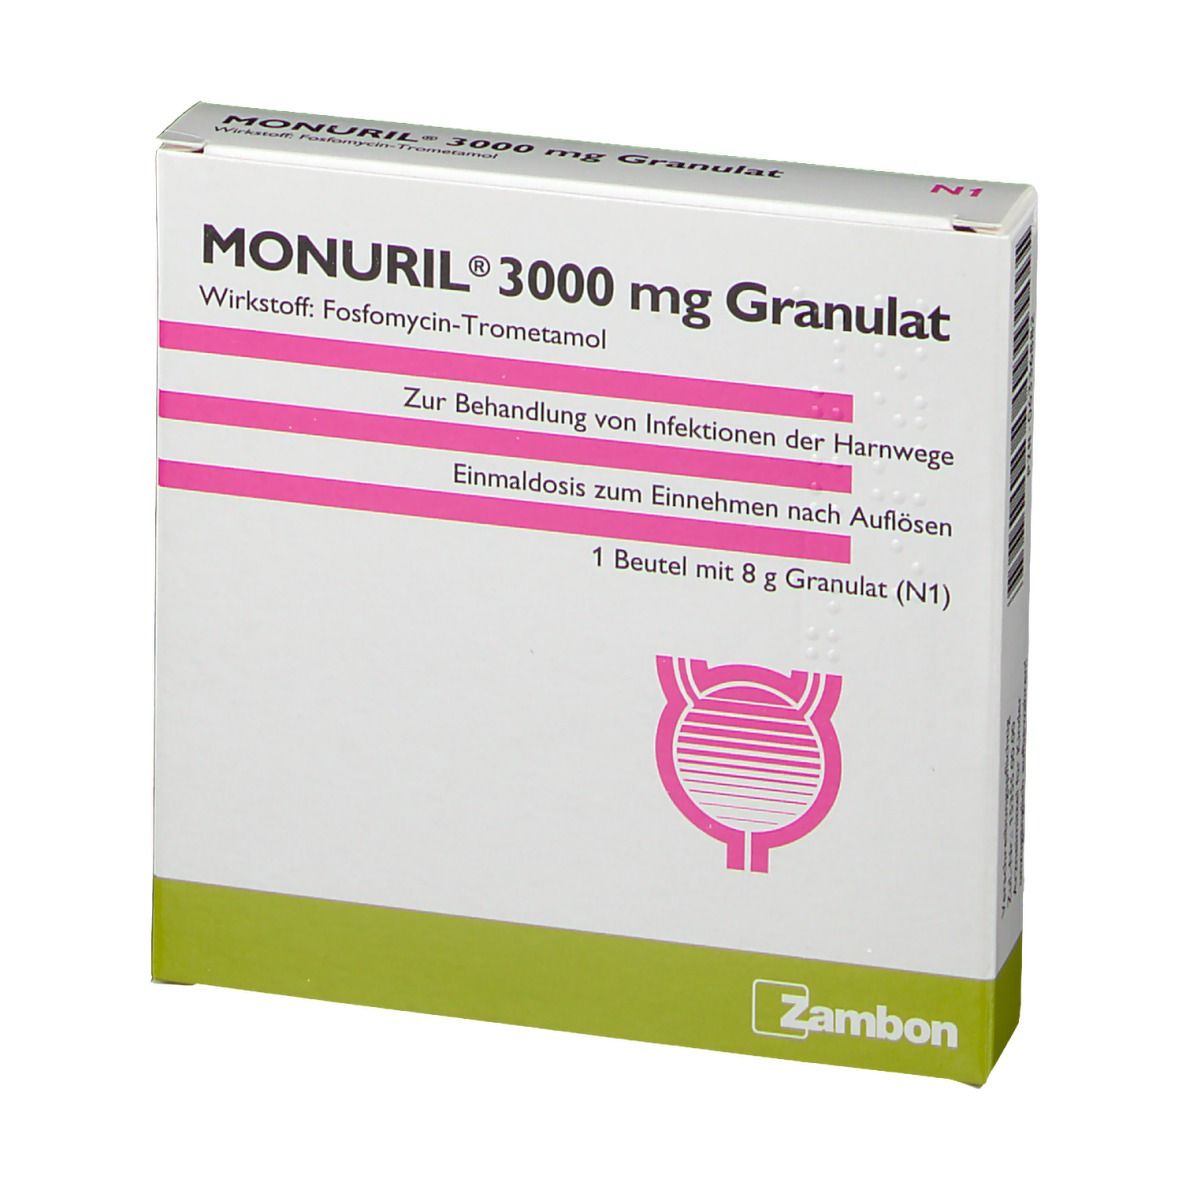 MONURIL® 3000 mg